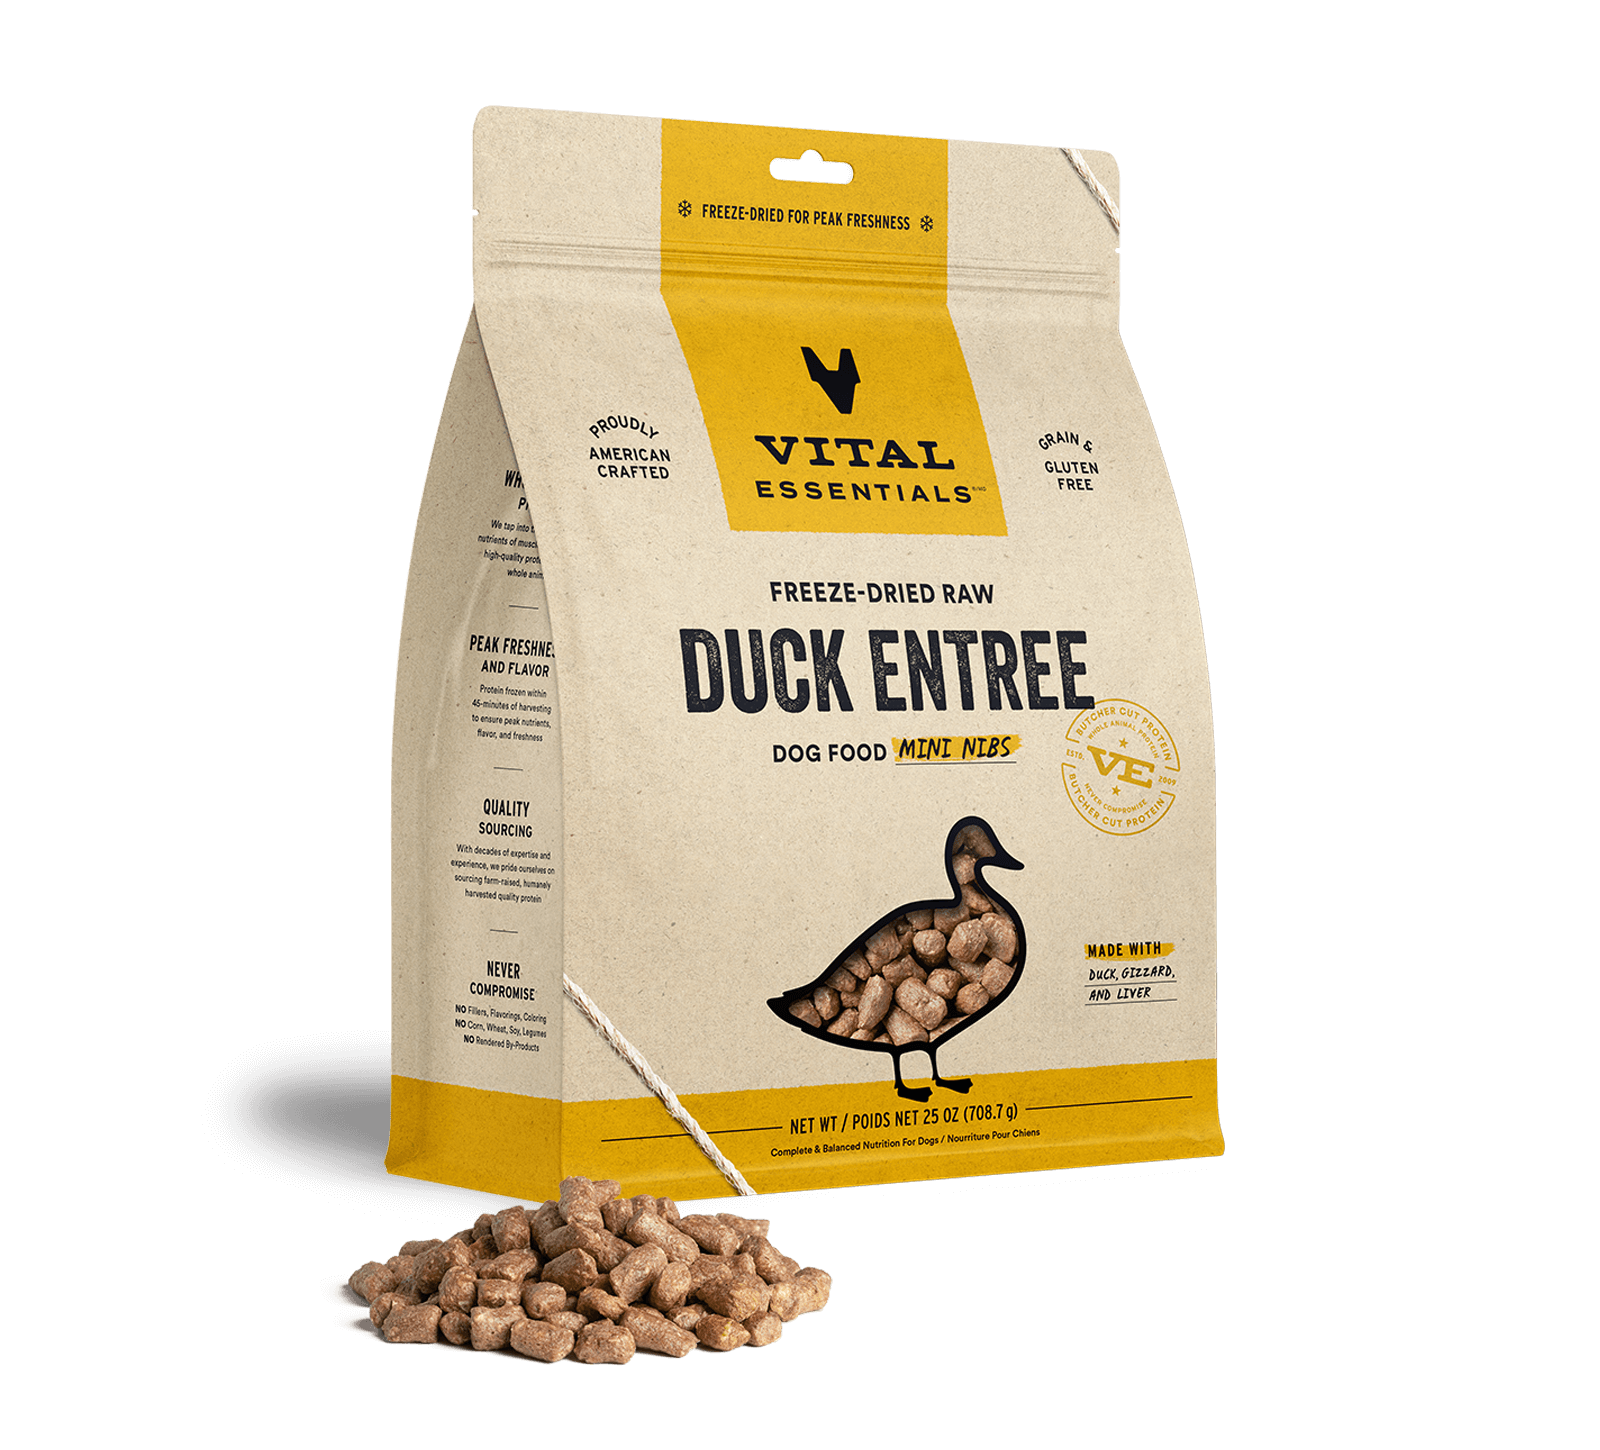 Vital Essentials Freeze-Dried Raw Duck Entree Dog Food Mini Nibs, 25 oz - Healing/First Aid